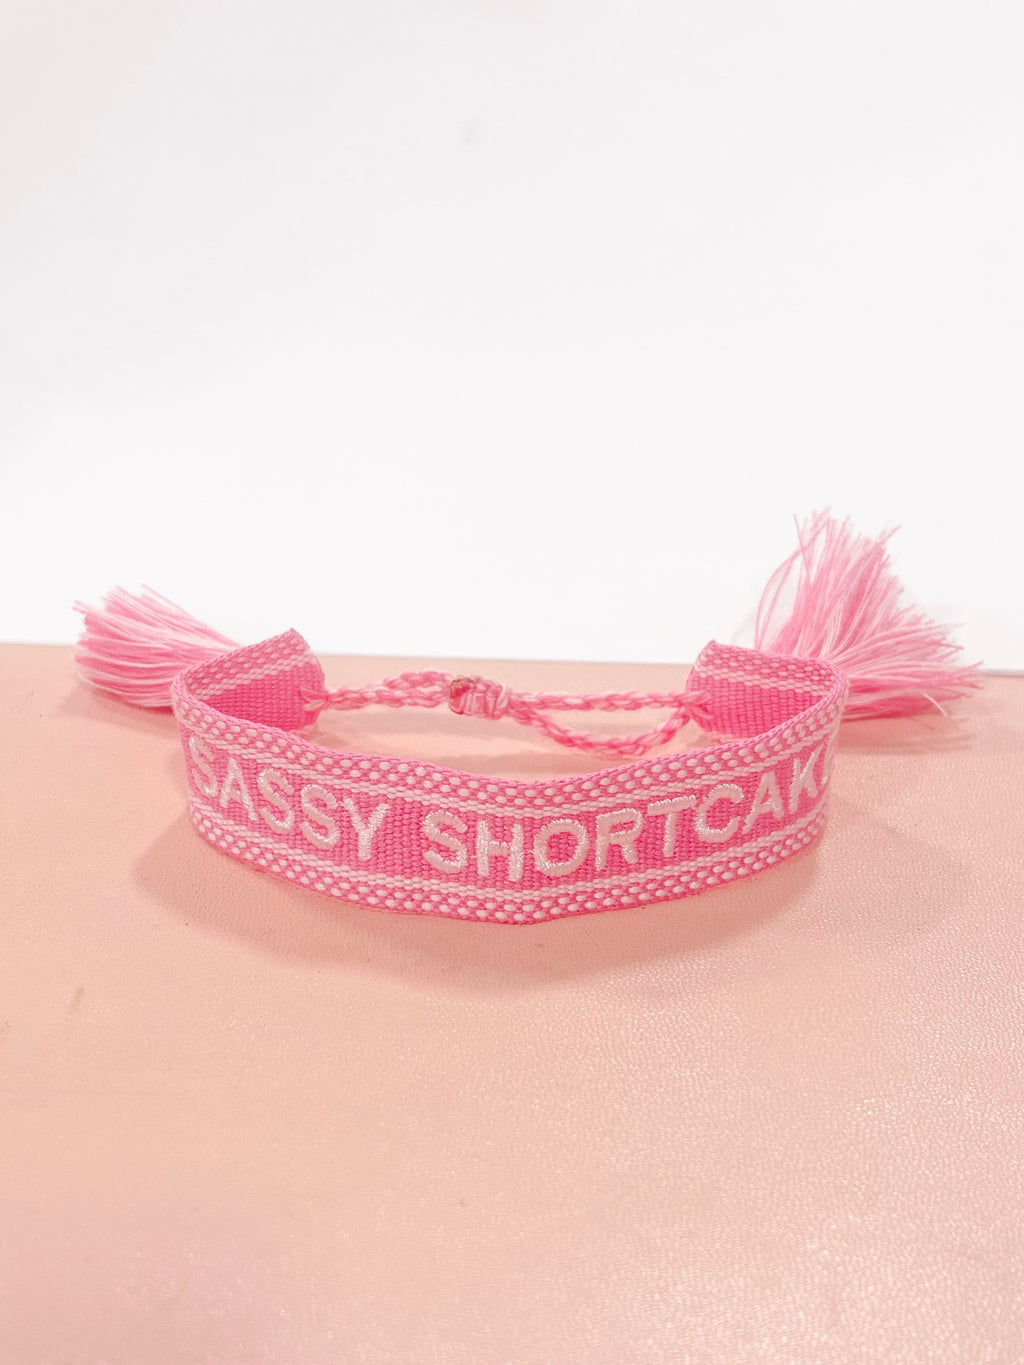 Sassy Shortcake (@SassyShortcakeB) / X